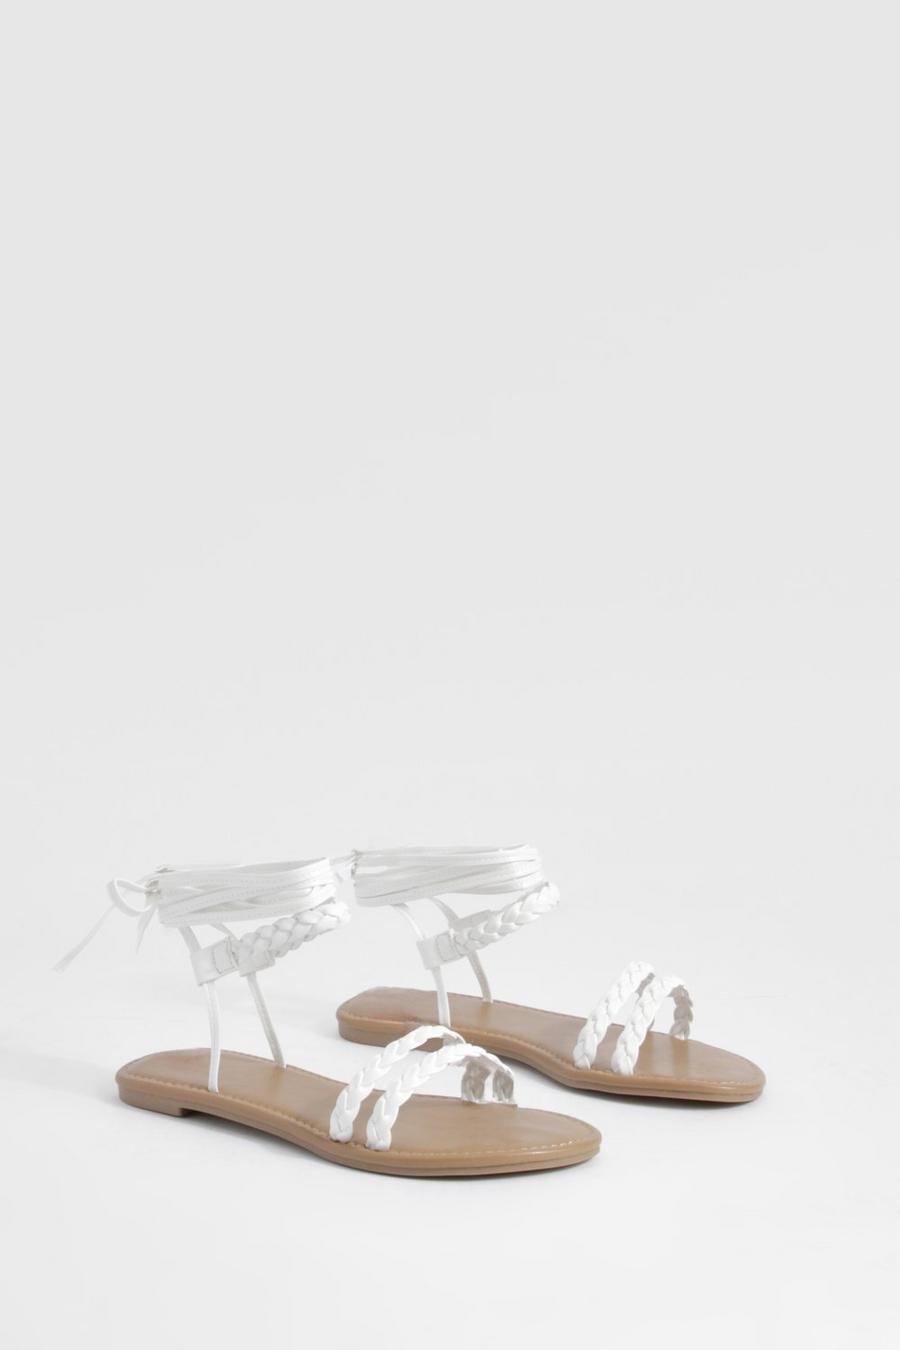 Sandalias de holgura ancha con tiras cruzadas, White